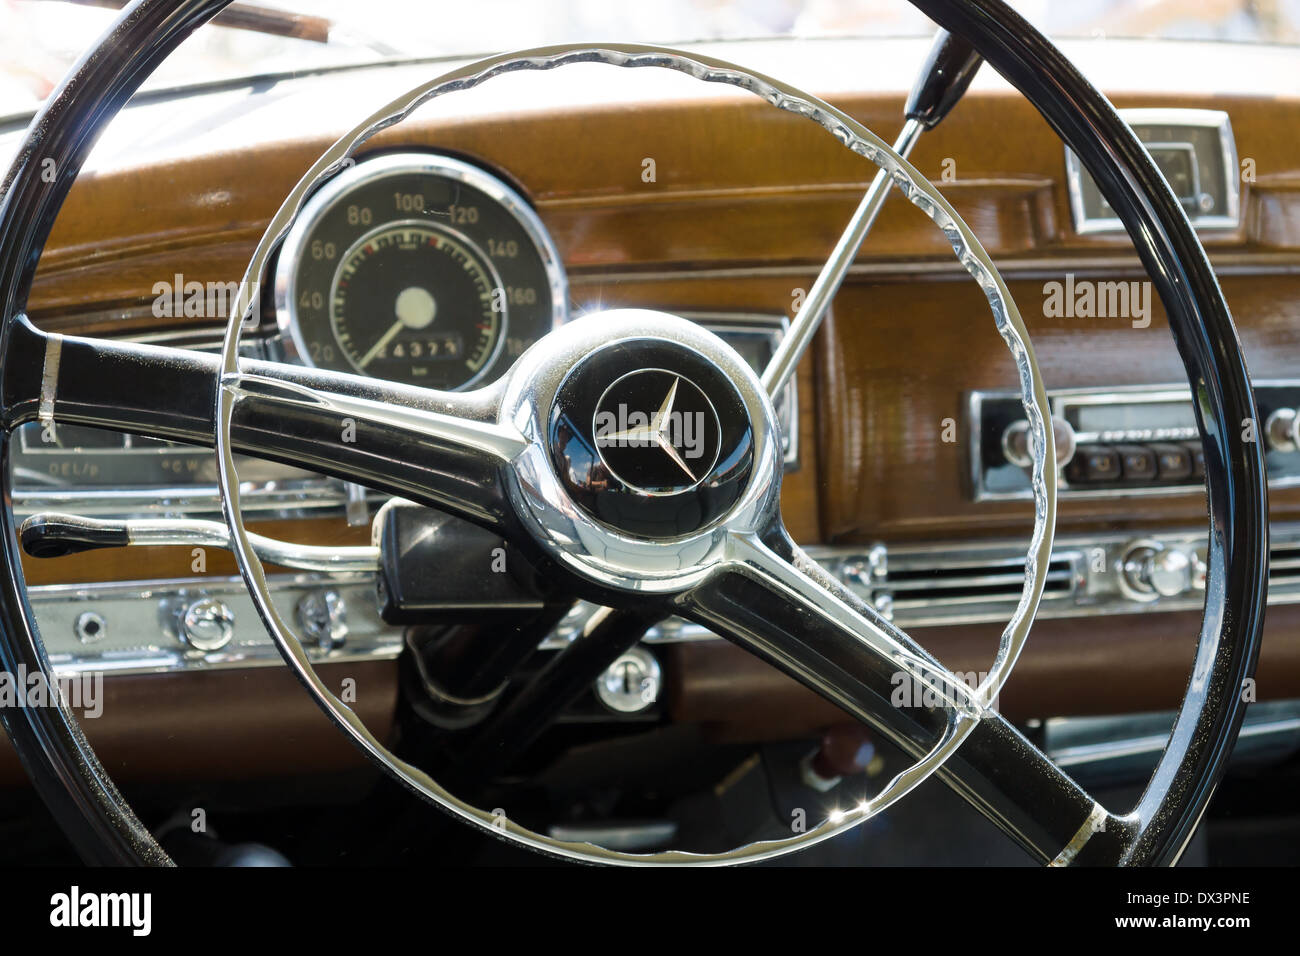 Cabina più prestigiosi e costosi vettura tedesca 50s, oggi analog S-Class, Mercedes-Benz Tipo 300 Adenauers Foto Stock